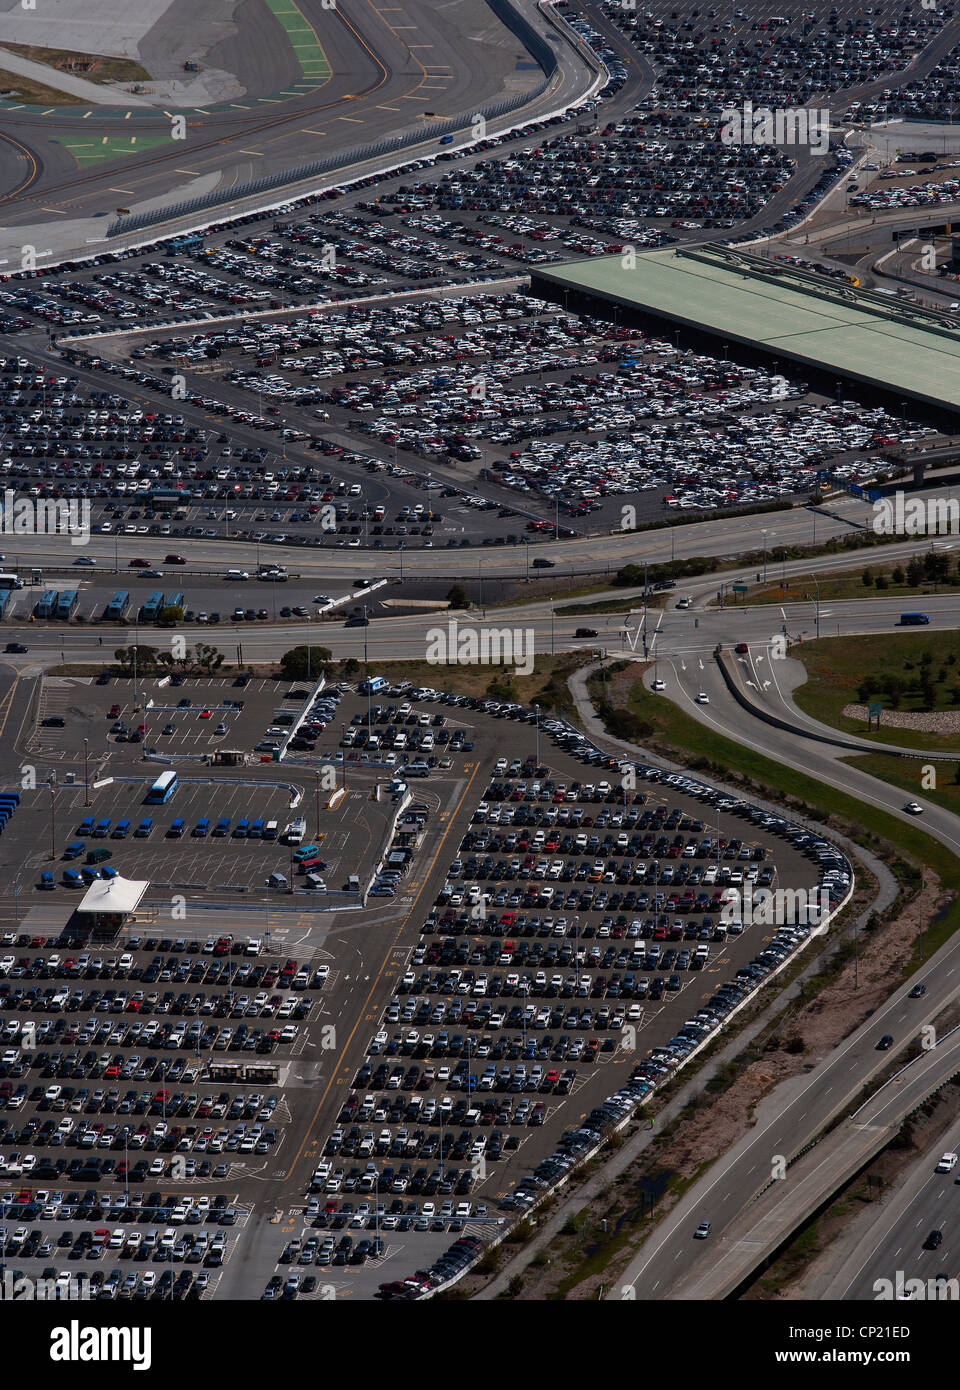 Photographie aérienne des voitures en stationnement à l'aéroport International de San Francisco SFO Banque D'Images